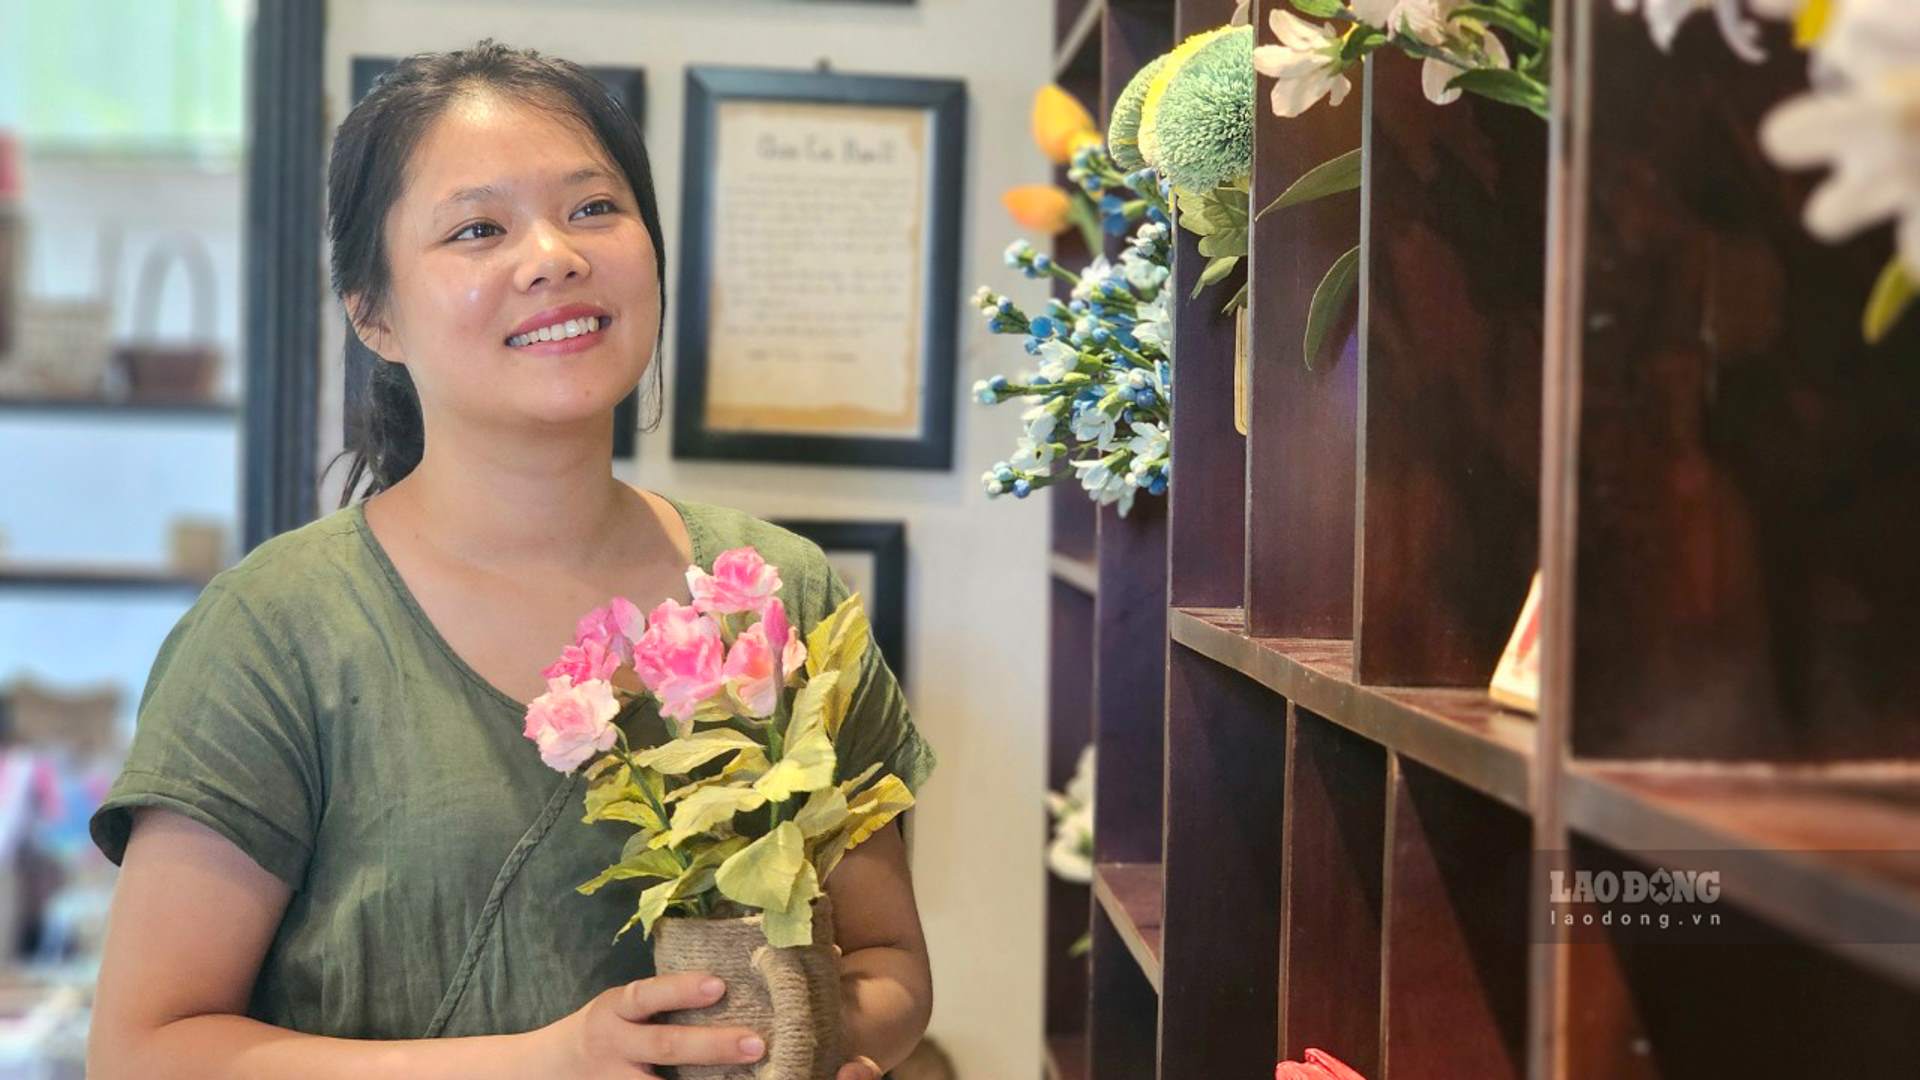 Chân dung cô gái 9X, người truyền cảm hứng vươn lên cho người khuyết tật. Ảnh: Nguyễn Luân.